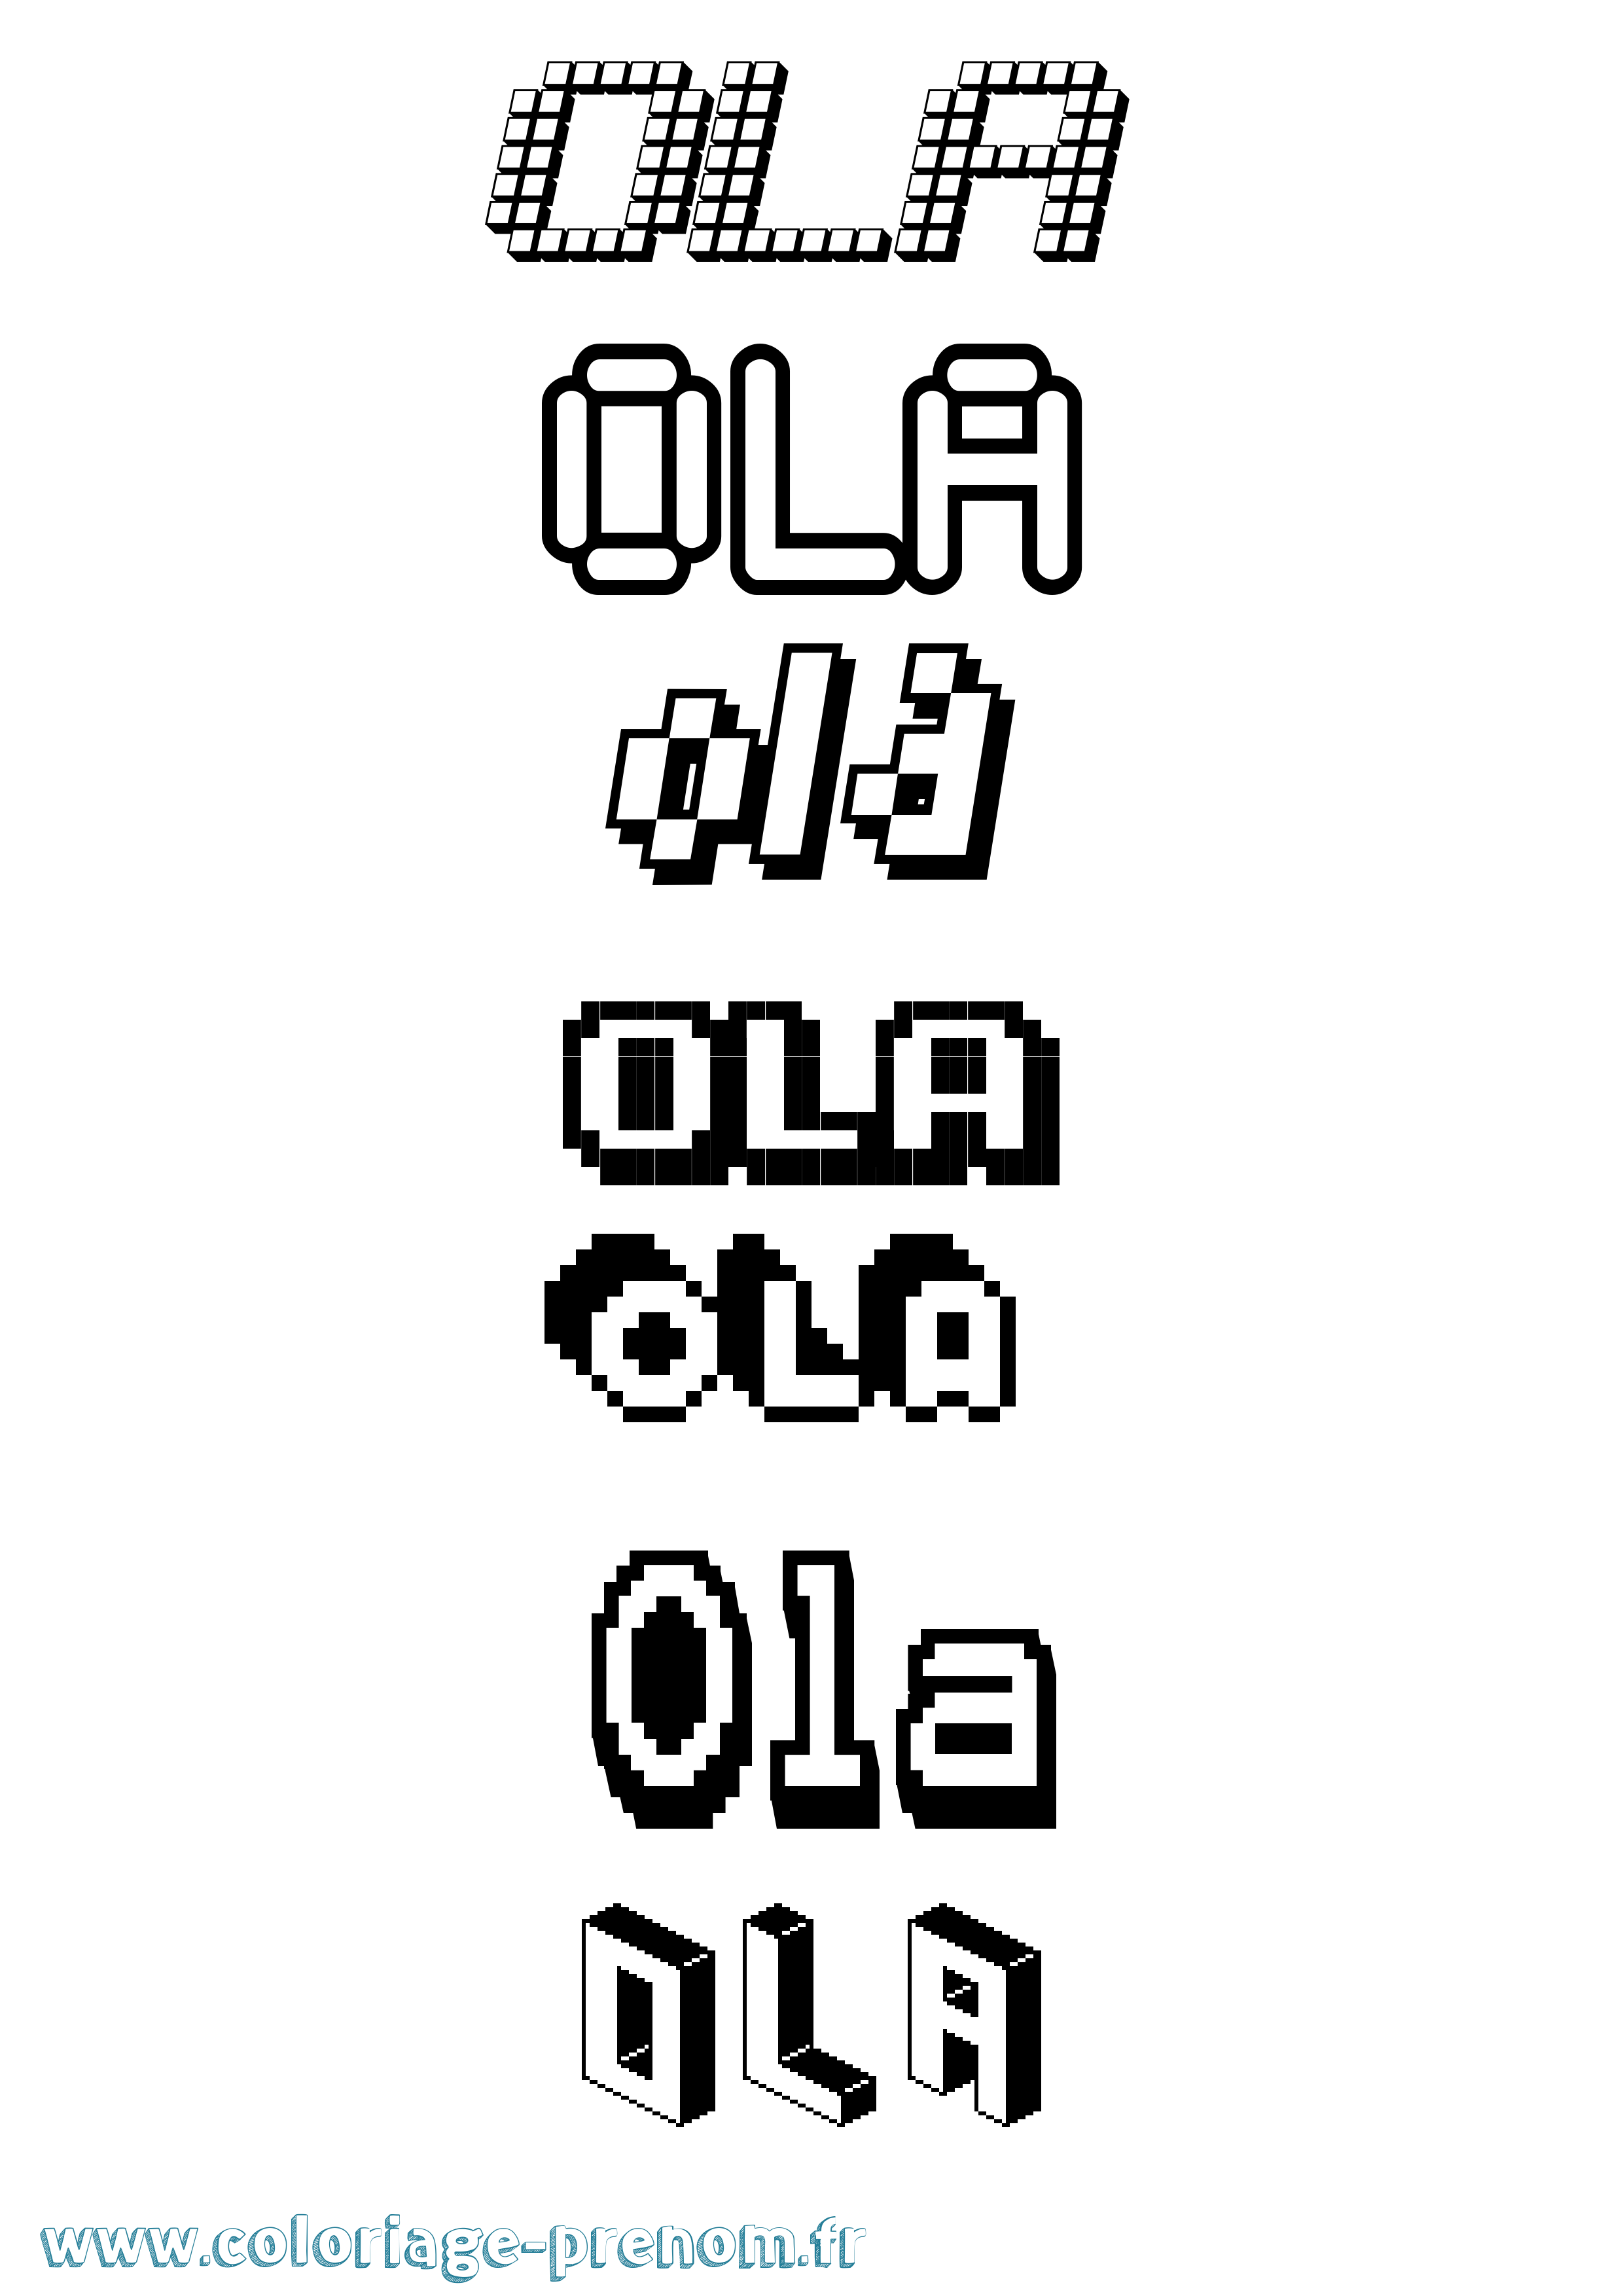 Coloriage prénom Ola Pixel